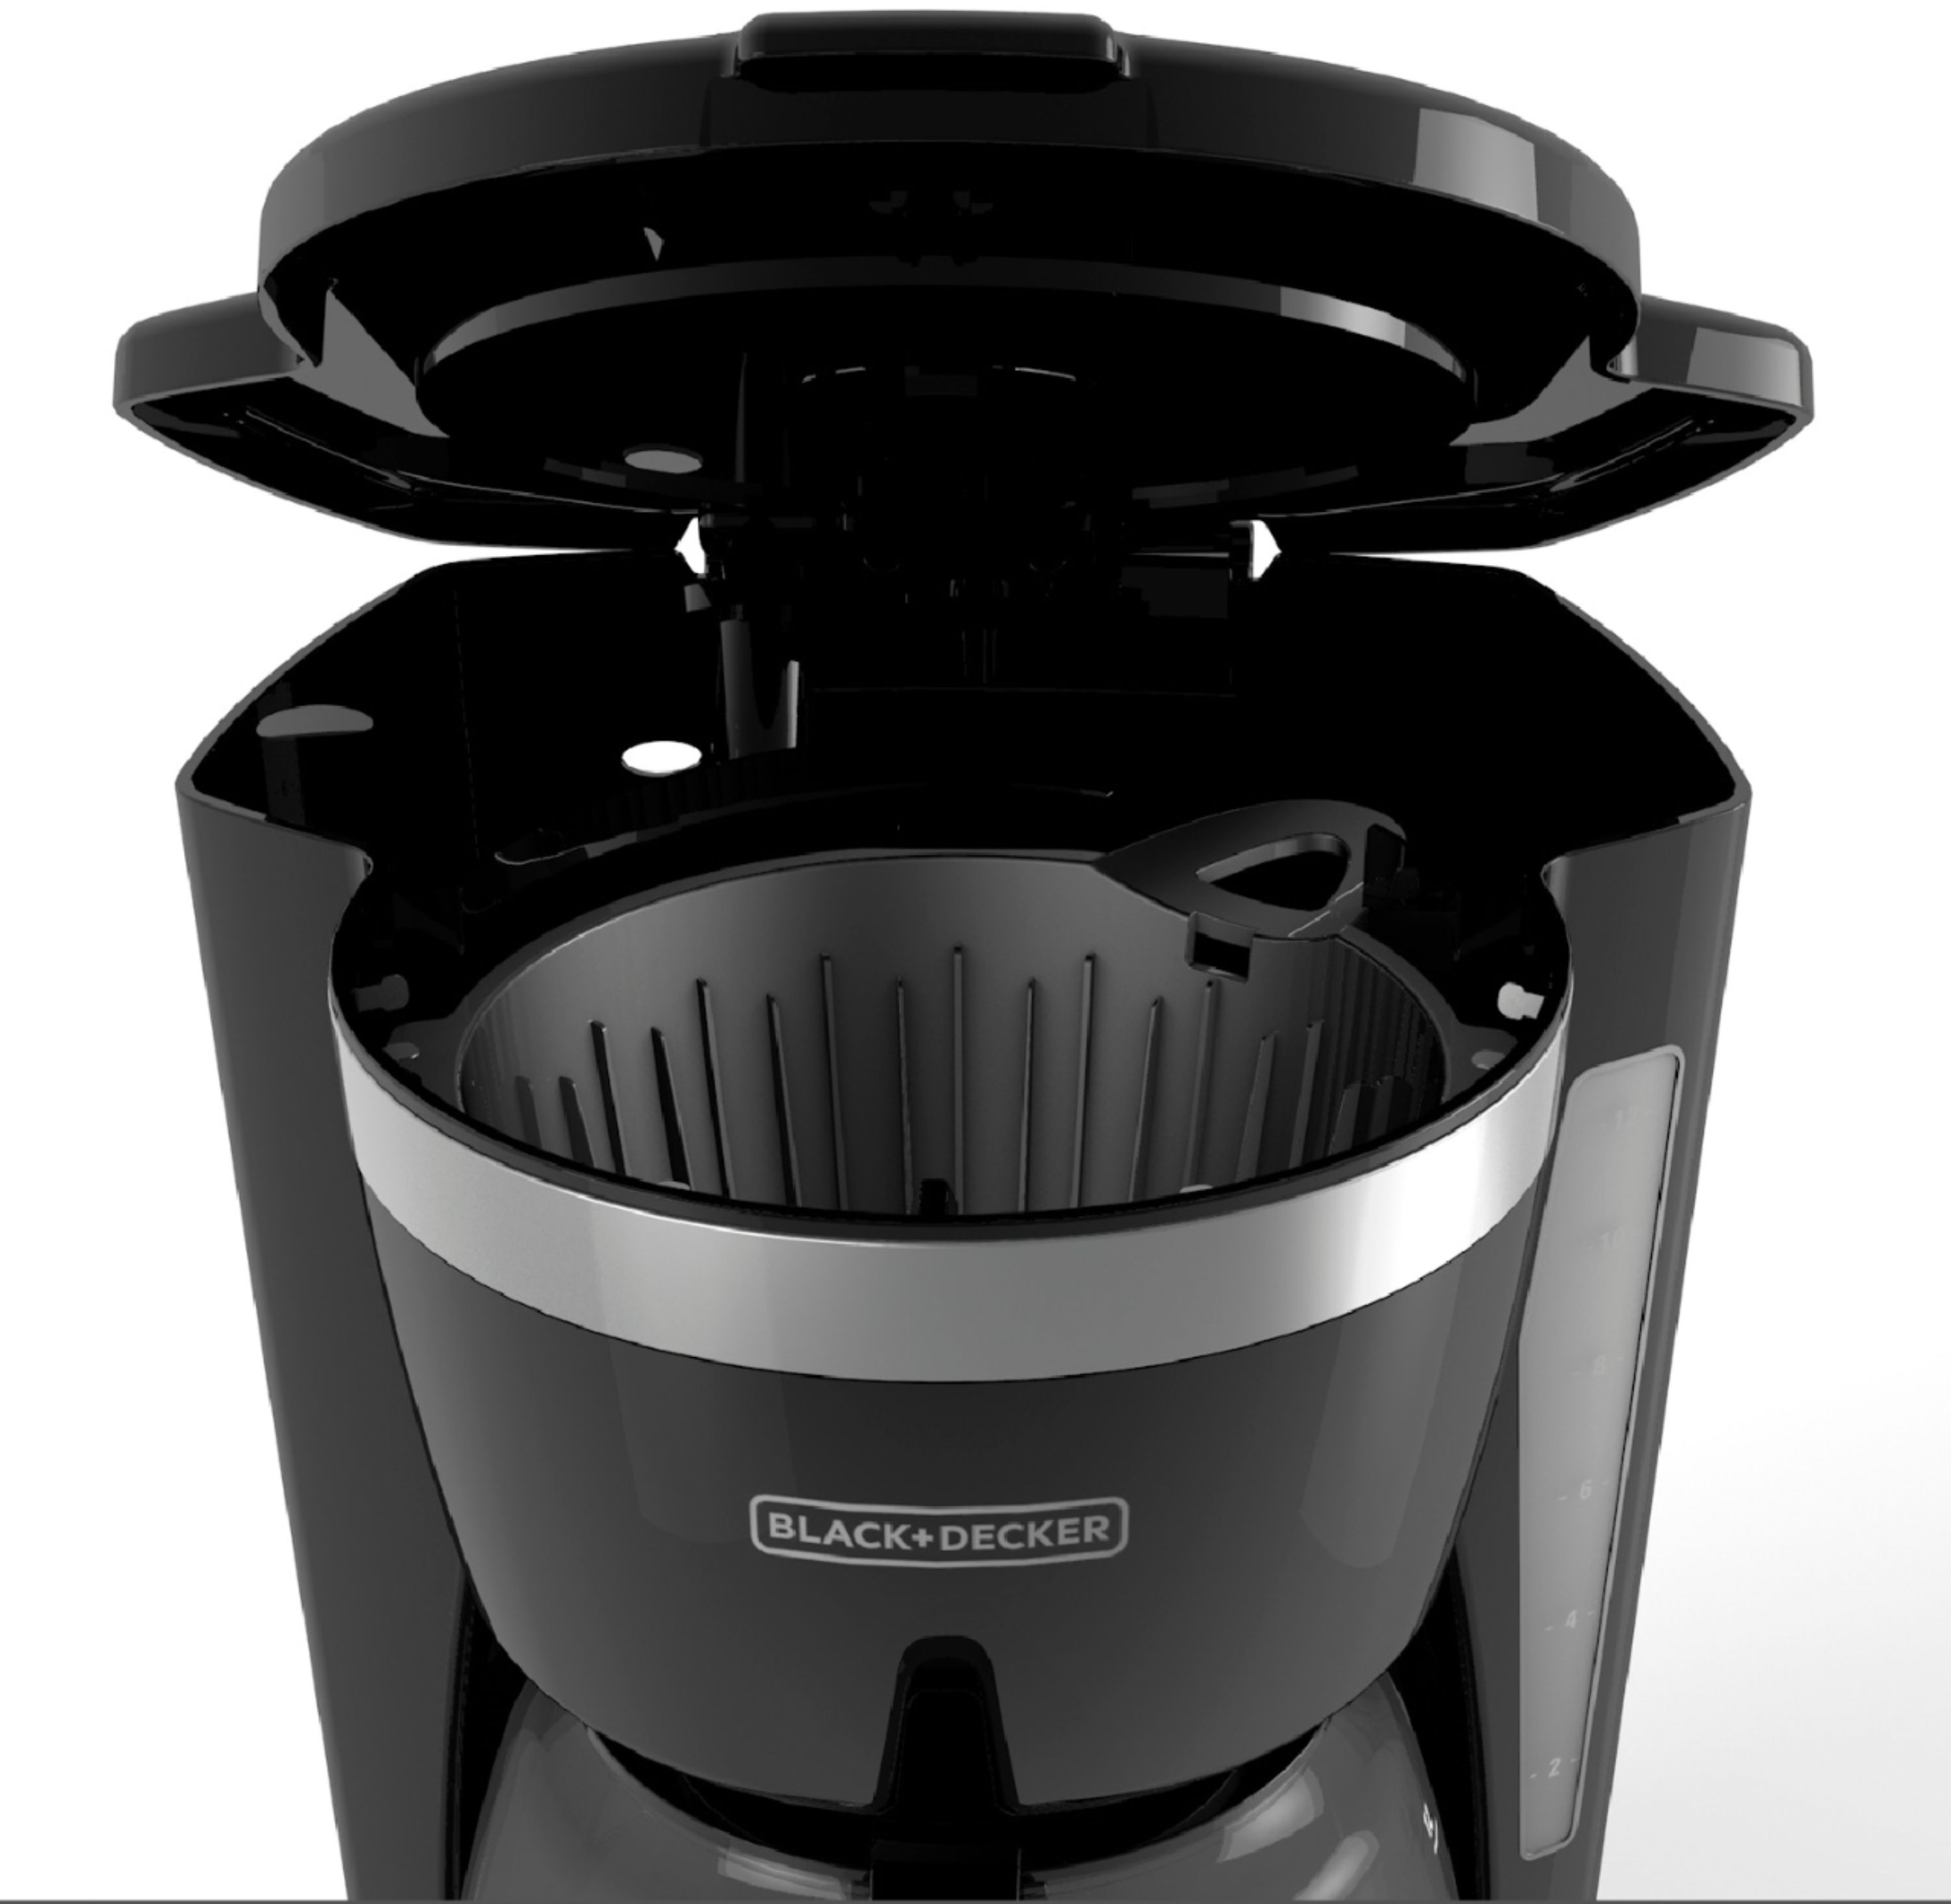 Black & Decker 12-Cup Programmable Coffee Maker Black DCM2160B - Best Buy